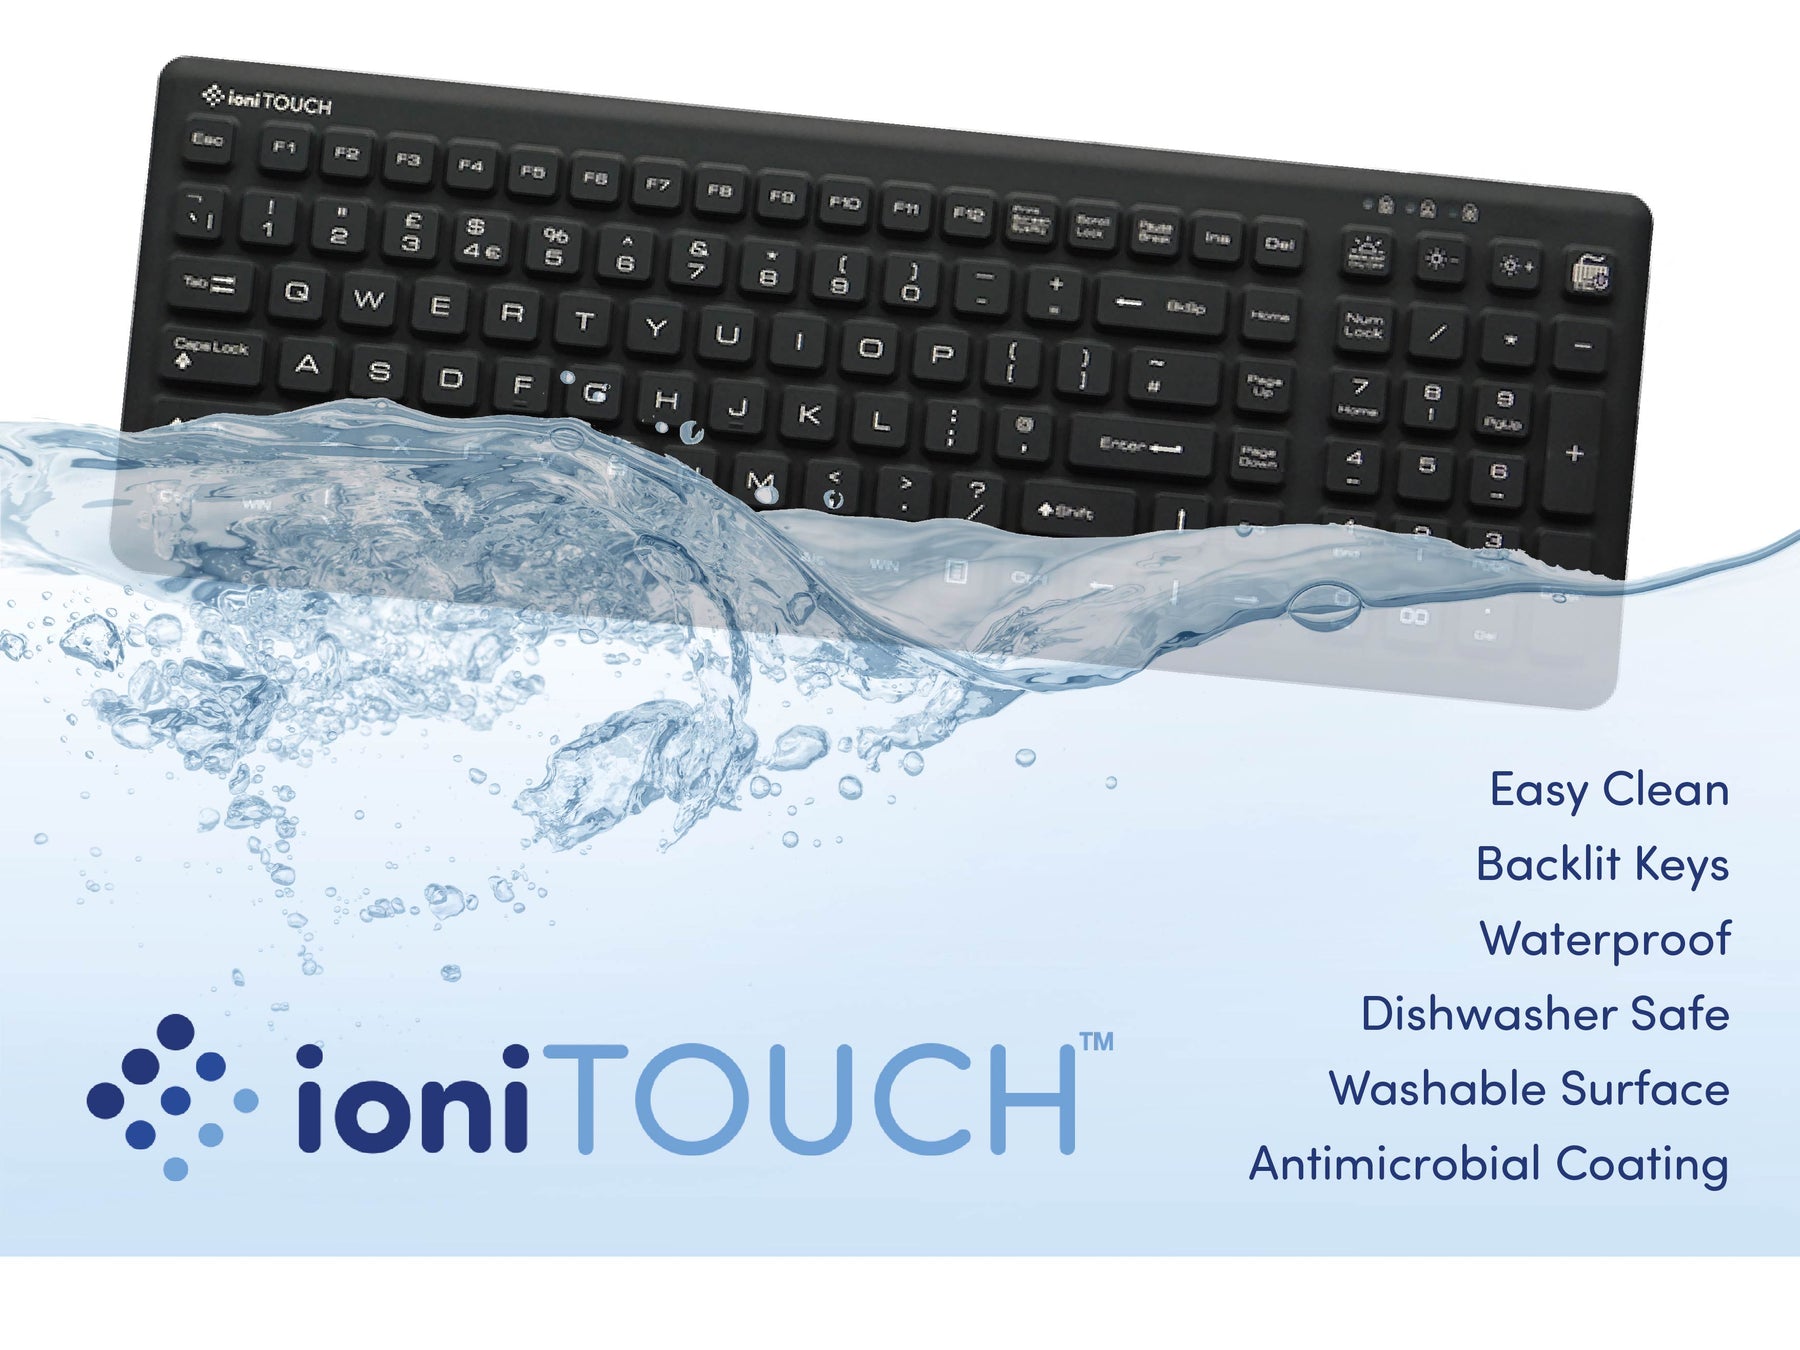 Backlit waterproof keyboard